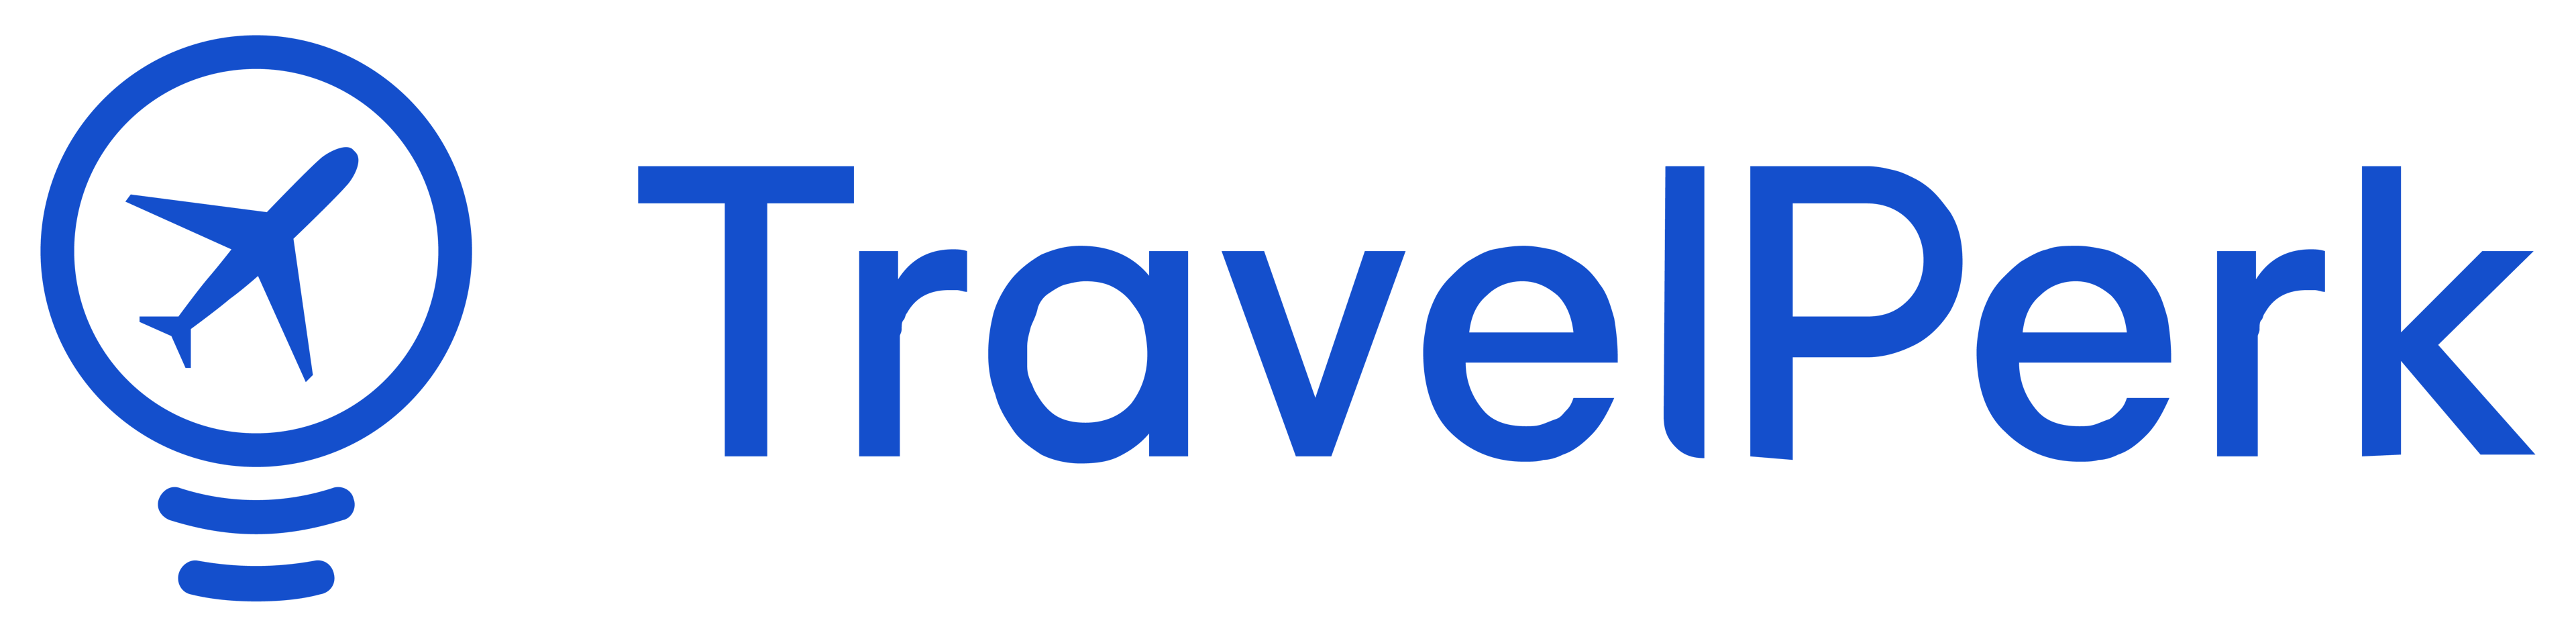 VisionFund Portfolio Company TravelPerk’s logo